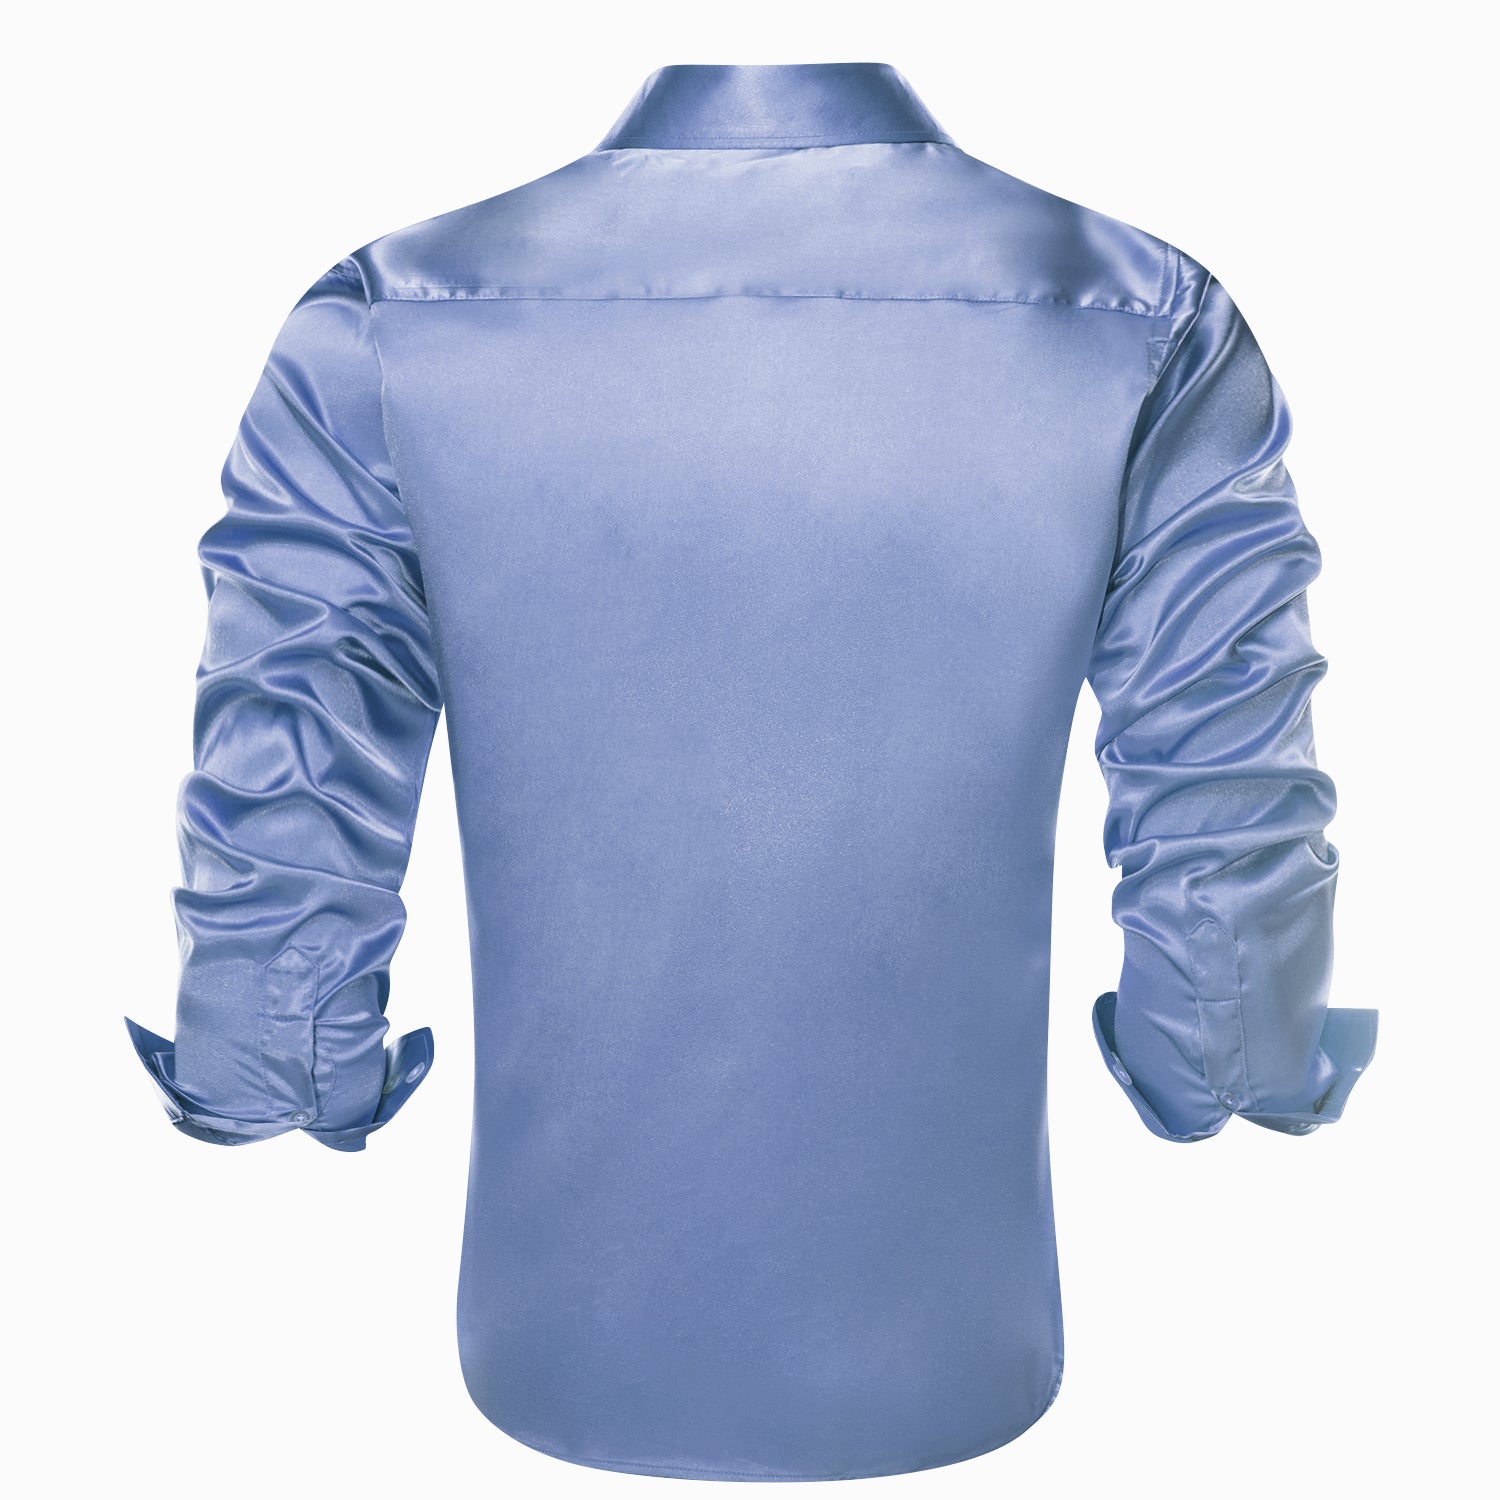 Blue Solid Satin Silk Men's Long Sleeve Dress Shirt